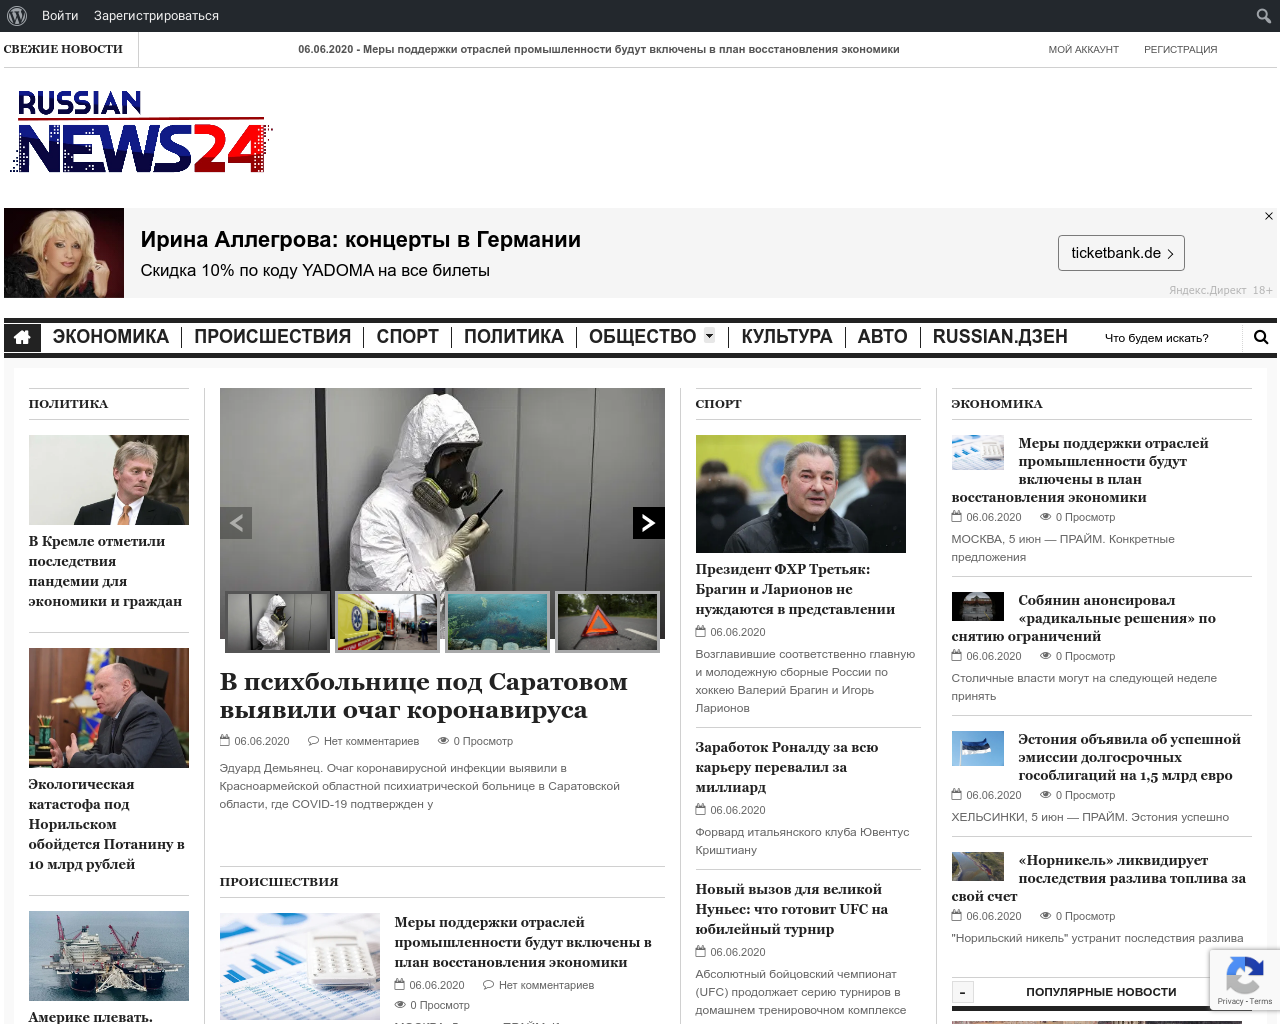 Изображение сайта rn24.ru в разрешении 1280x1024